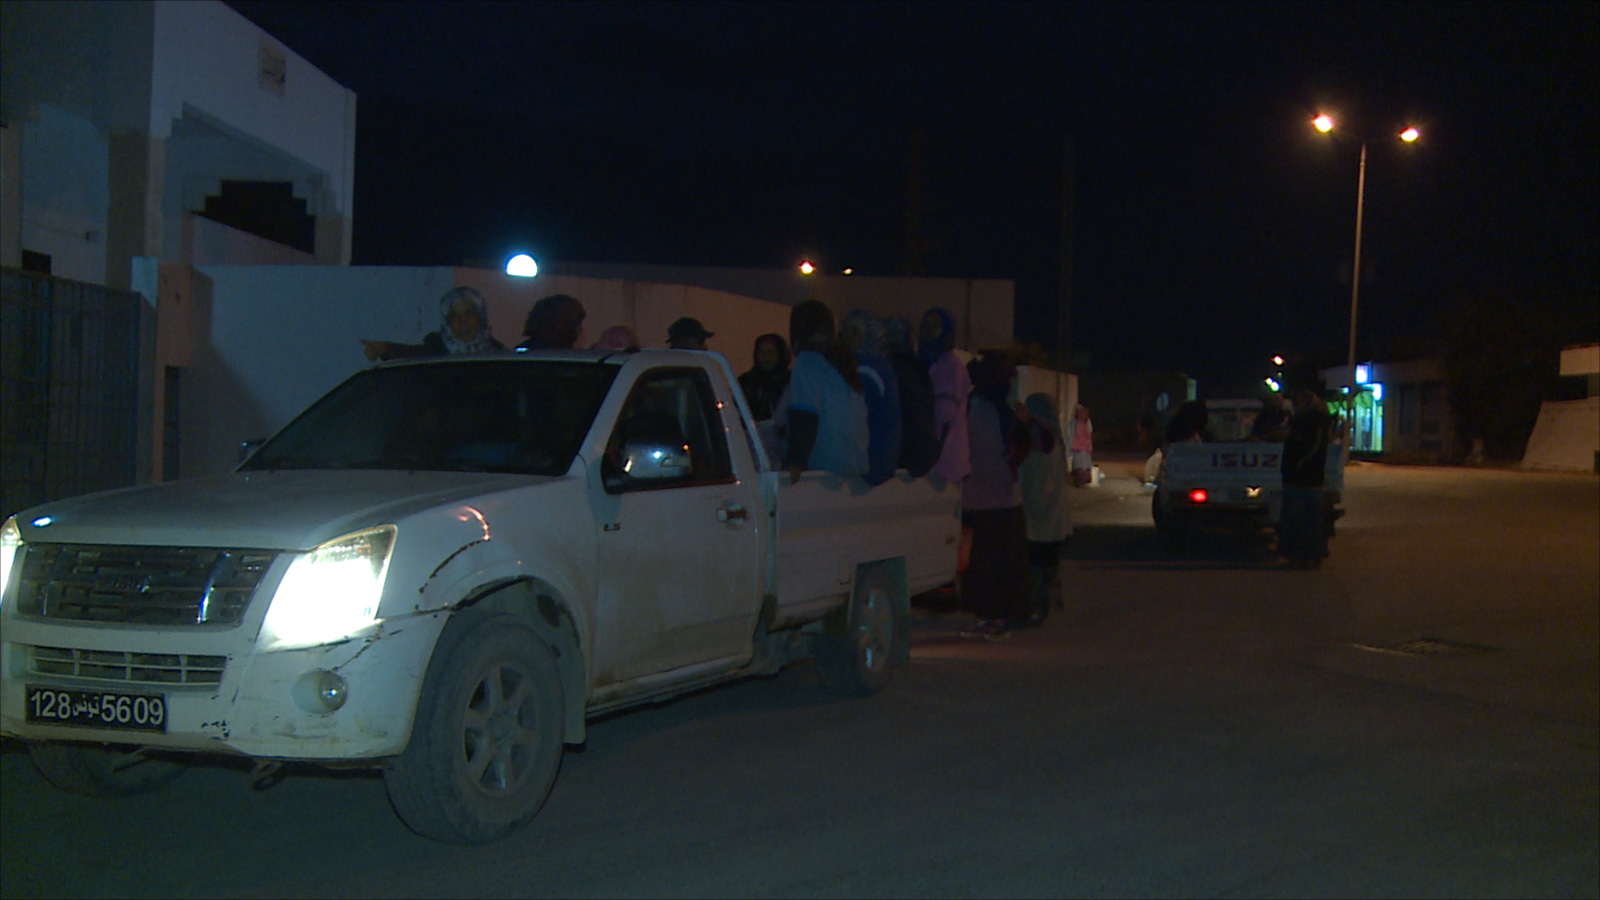 ‪(الجزيرة)‬ لامعة وصديقاتها متراصات في الصندوق الخلفي للشاحنة مع بداية الفجر بسيدي بوزيد بتونس 